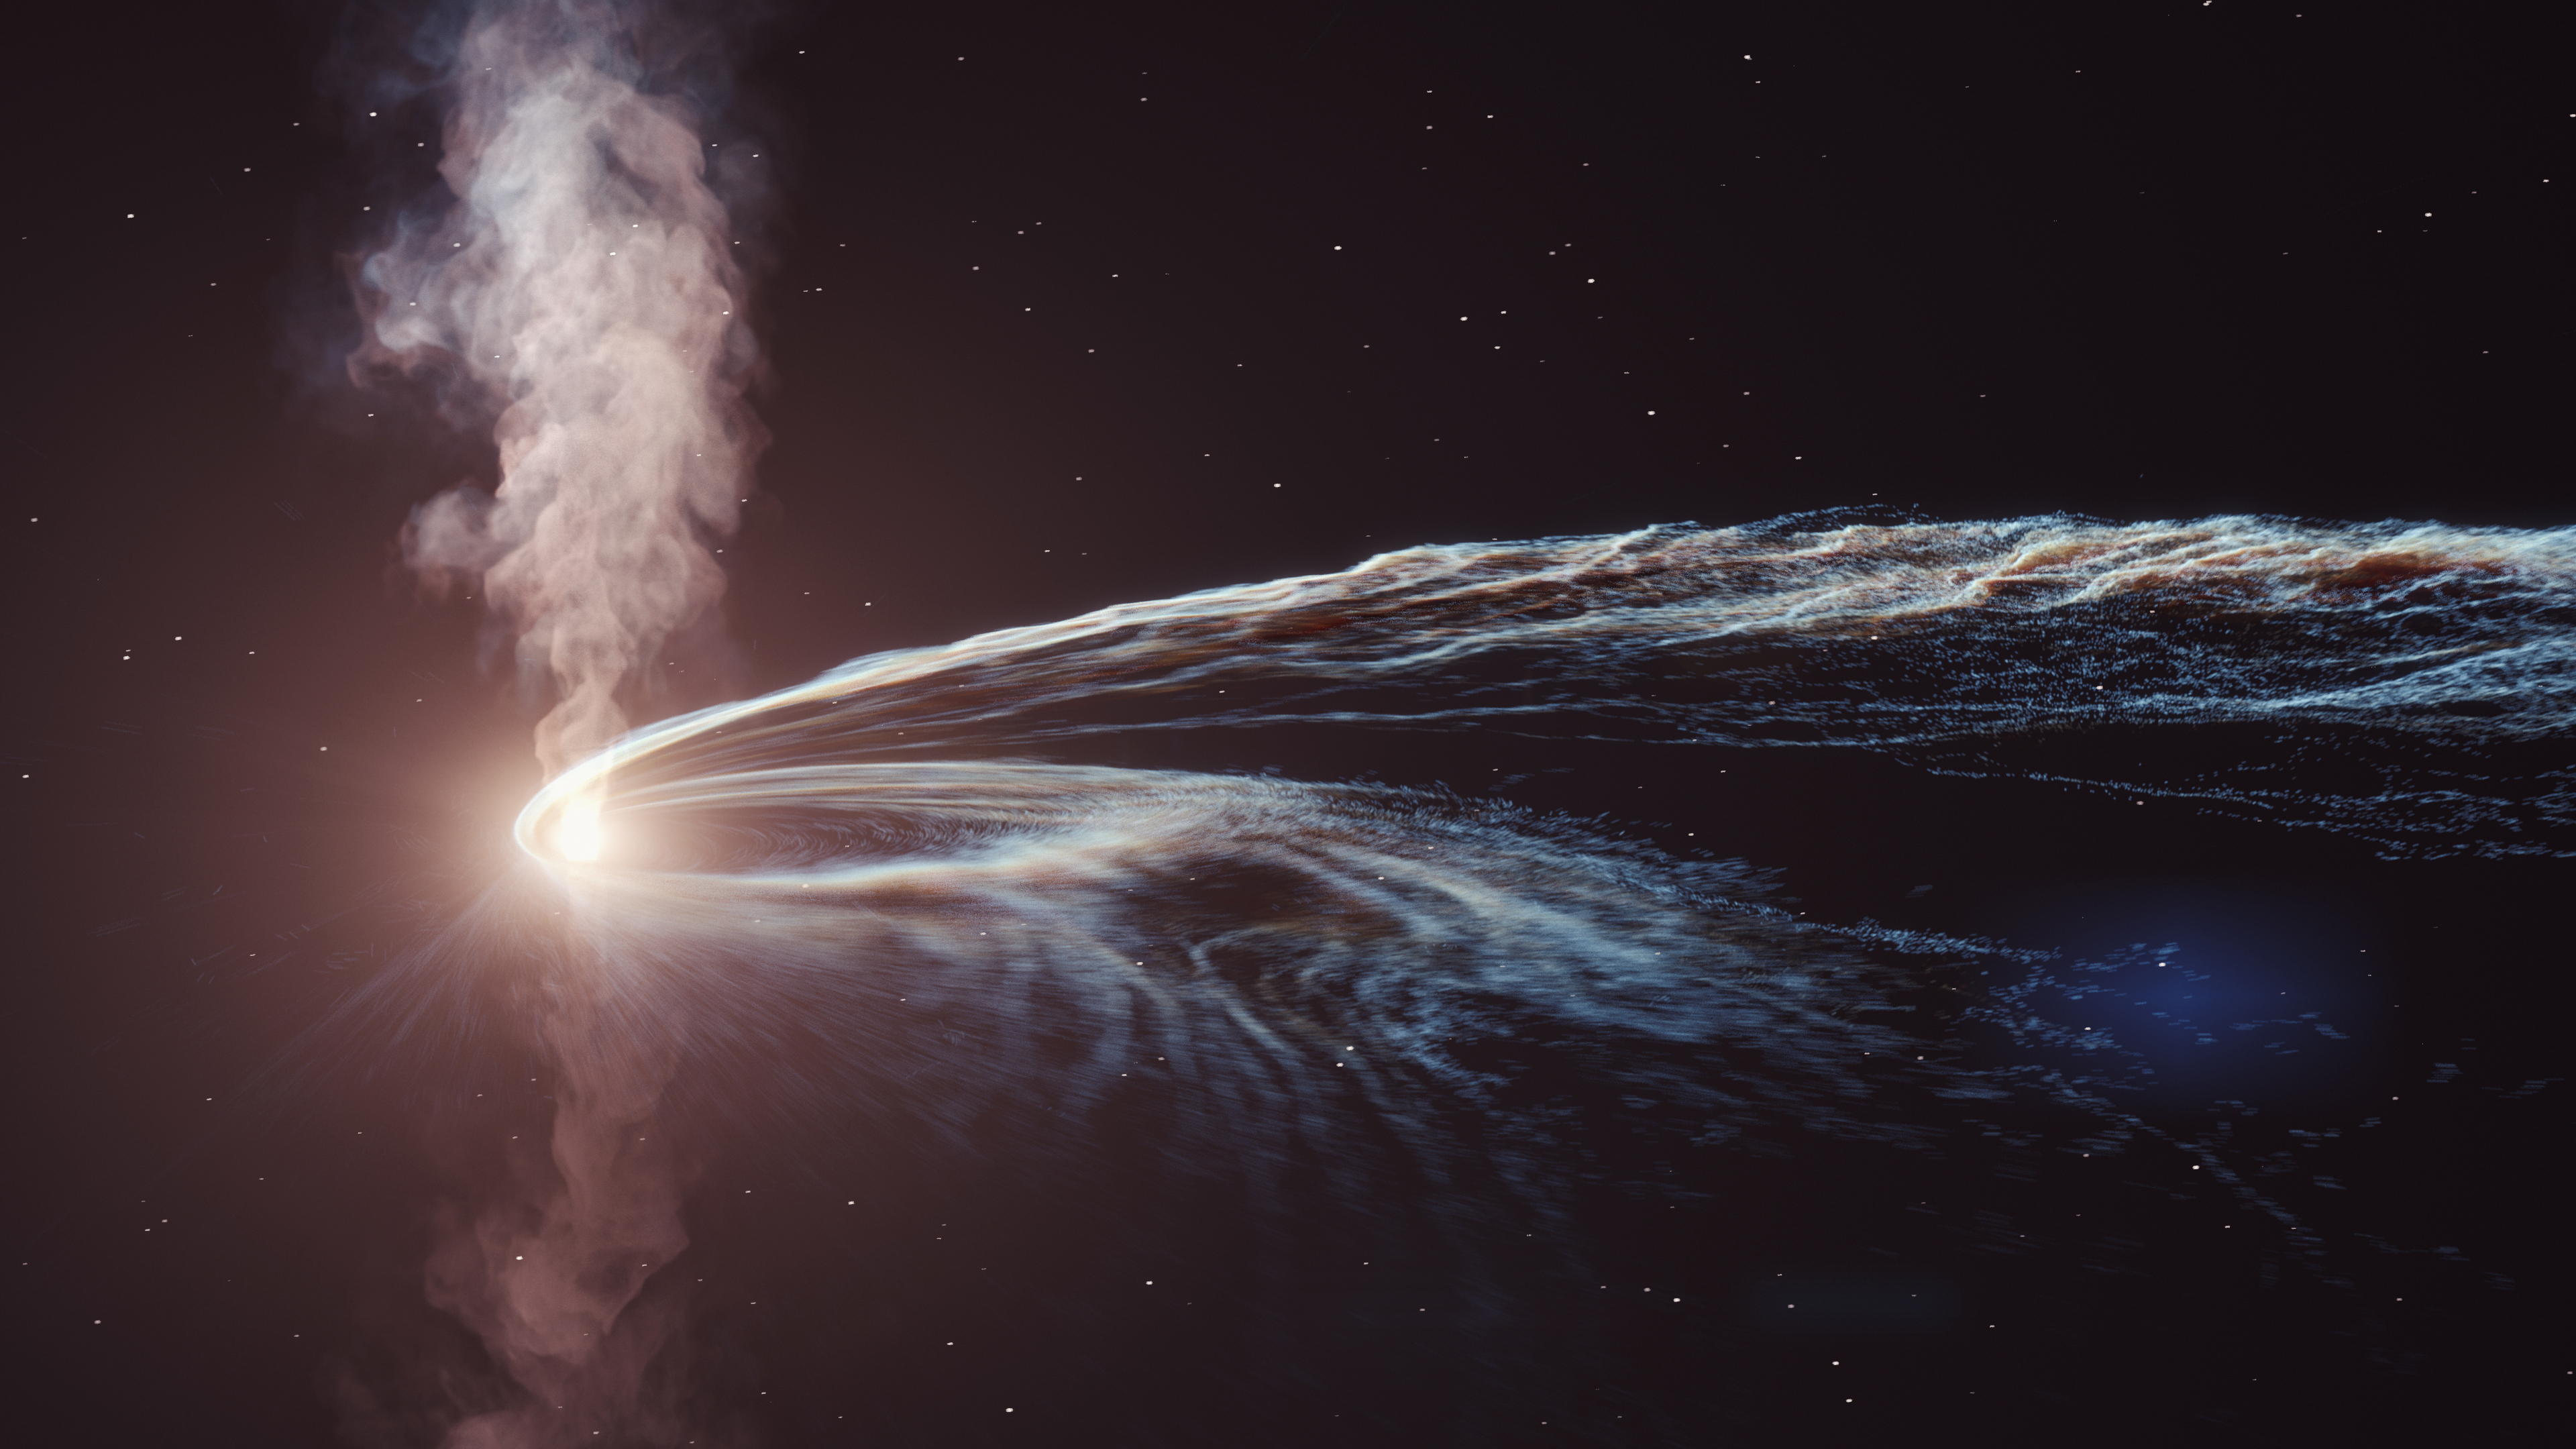   Künstlerische Illustration des Gezeitenstörungsereignisses AT2019dsg, bei dem ein supermassereiches Schwarzes Loch spaghettifiziert und einen Stern verschlingt.  Ein Teil des Materials wird vom Schwarzen Loch nicht verbraucht und wieder in den Weltraum geschleudert.